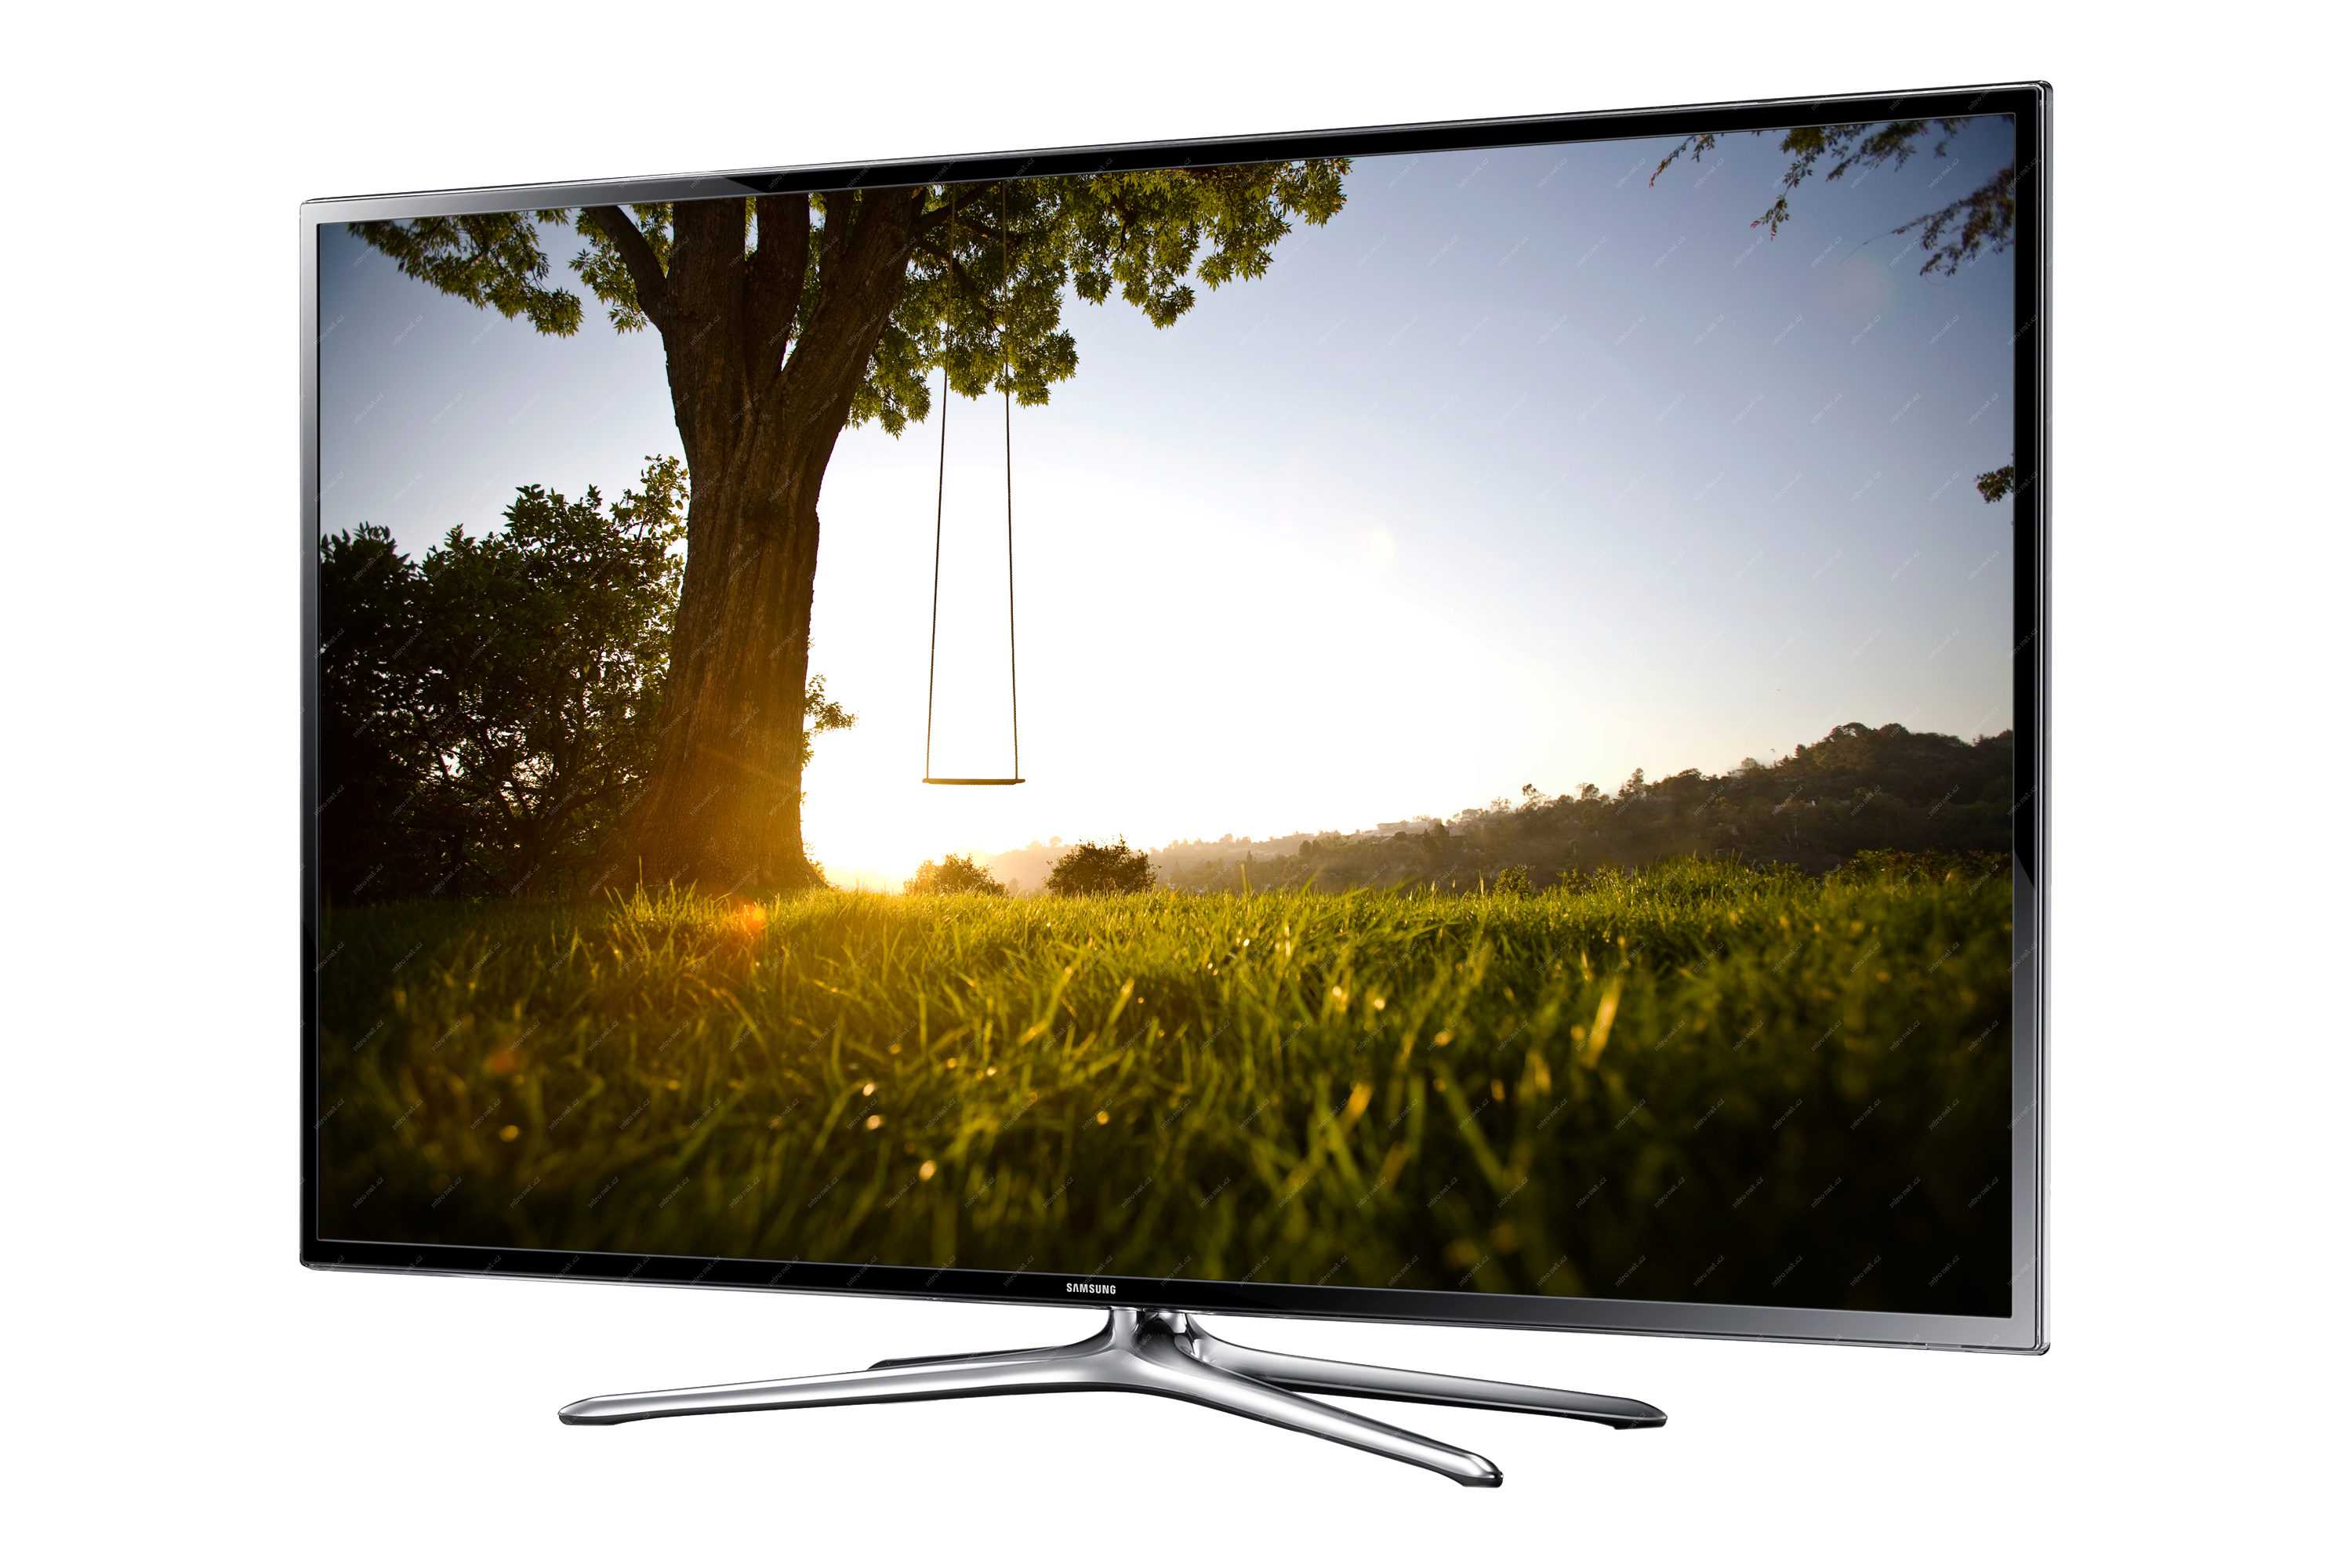 Телевизор samsung ue46f6500ab - купить | цены | обзоры и тесты | отзывы | параметры и характеристики | инструкция